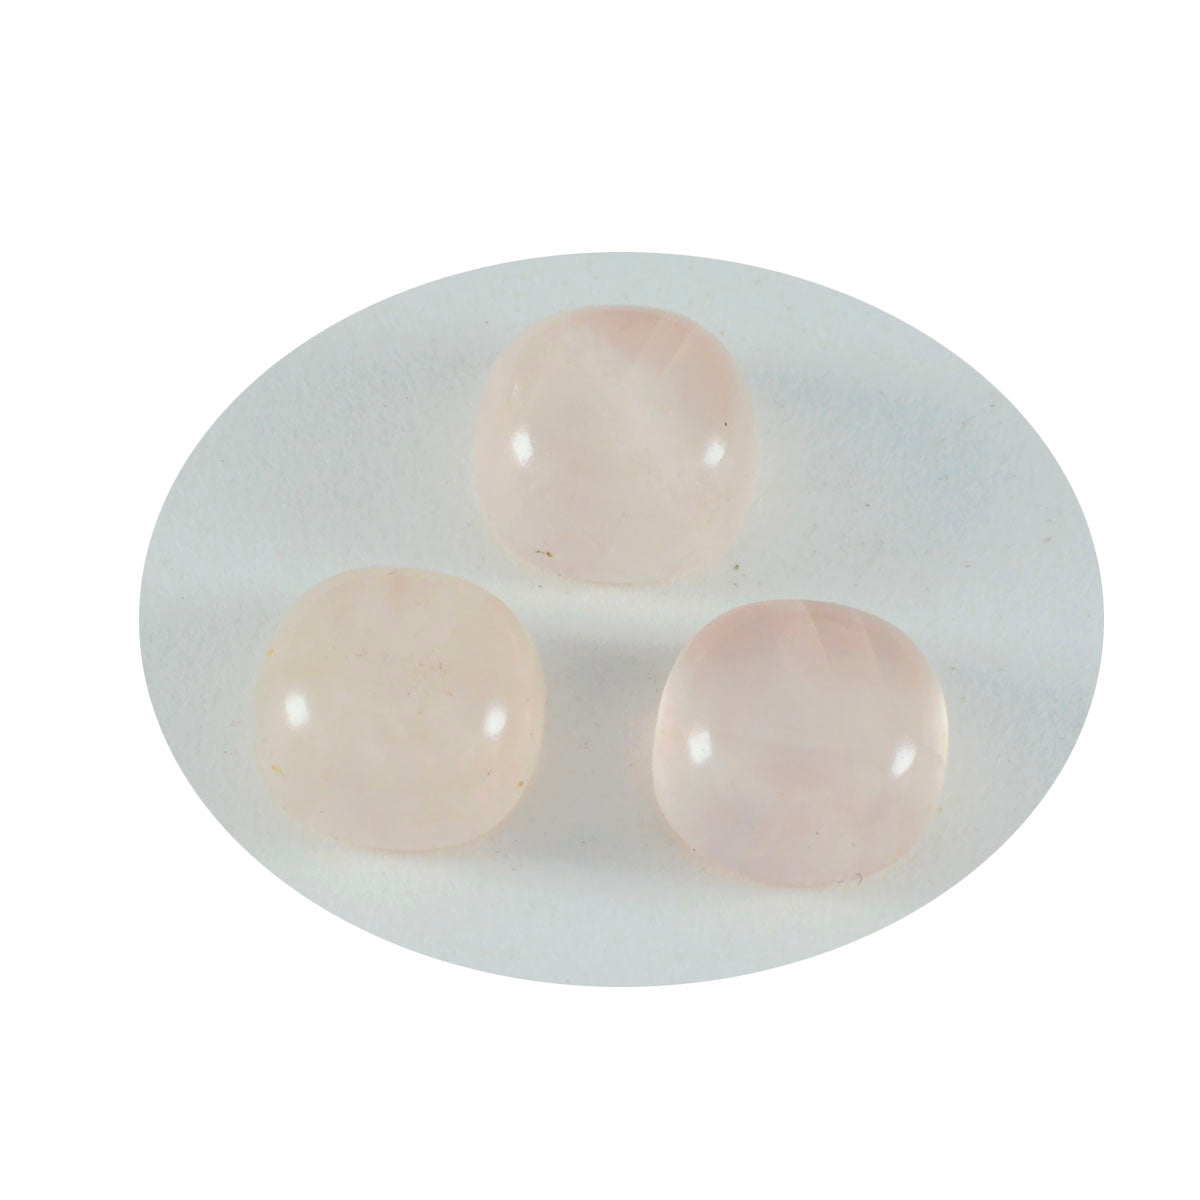 Riyogems 1PC roze rozenkwarts cabochon 12x12 mm kussenvorm mooie kwaliteit edelsteen